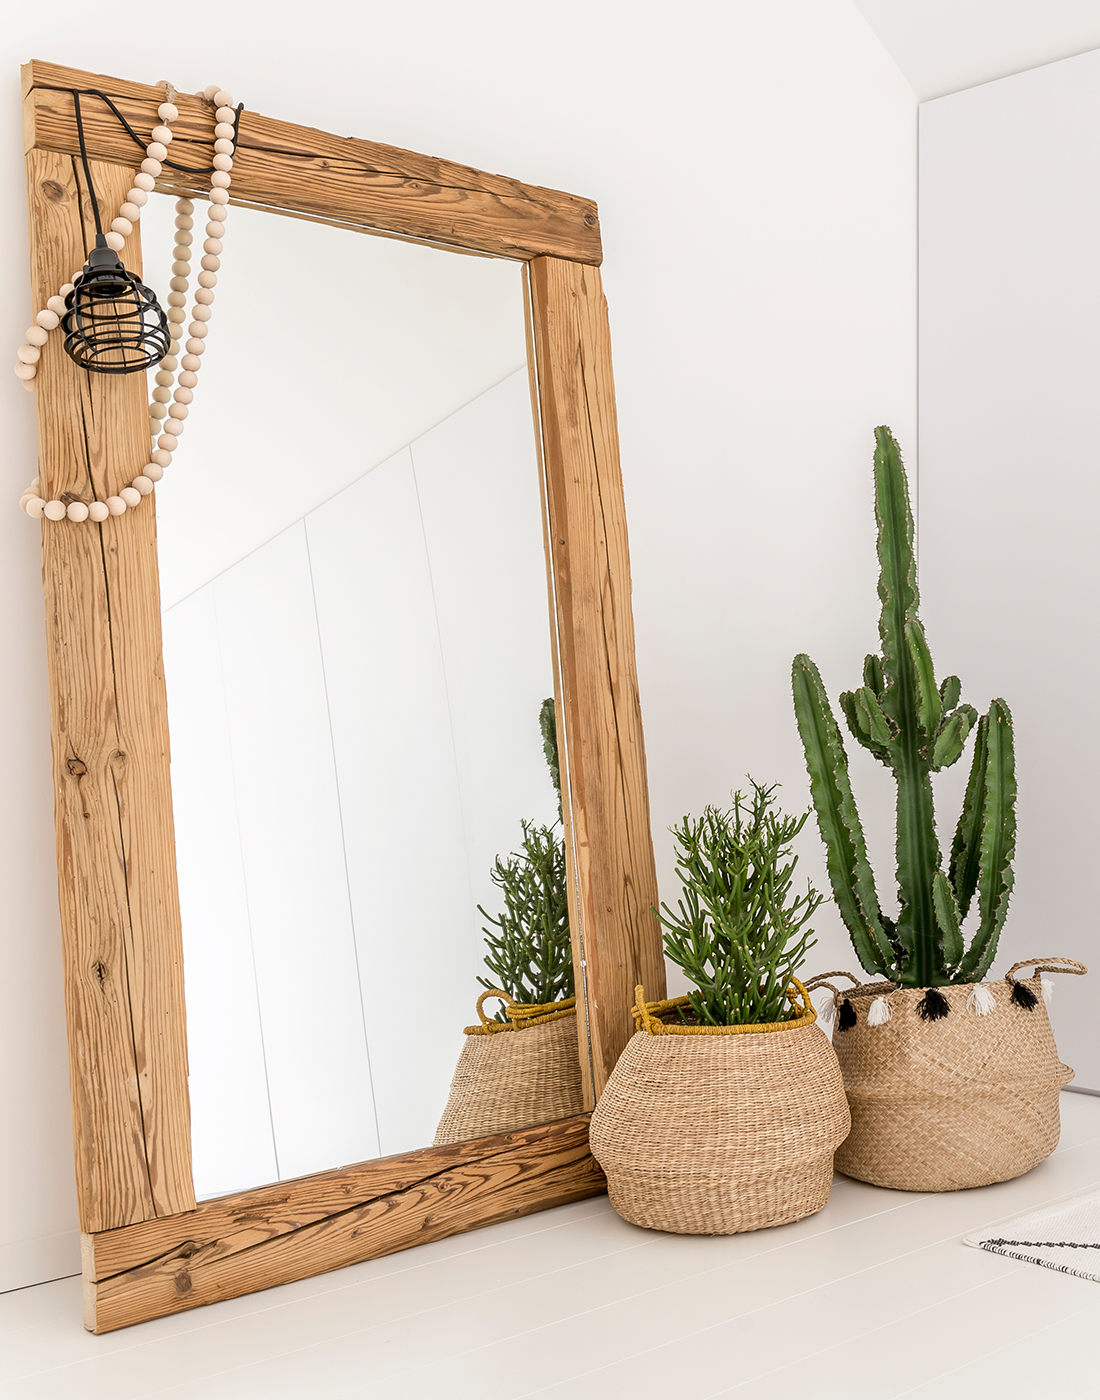 Empfang mit grossem Spiegel und Pflanzen